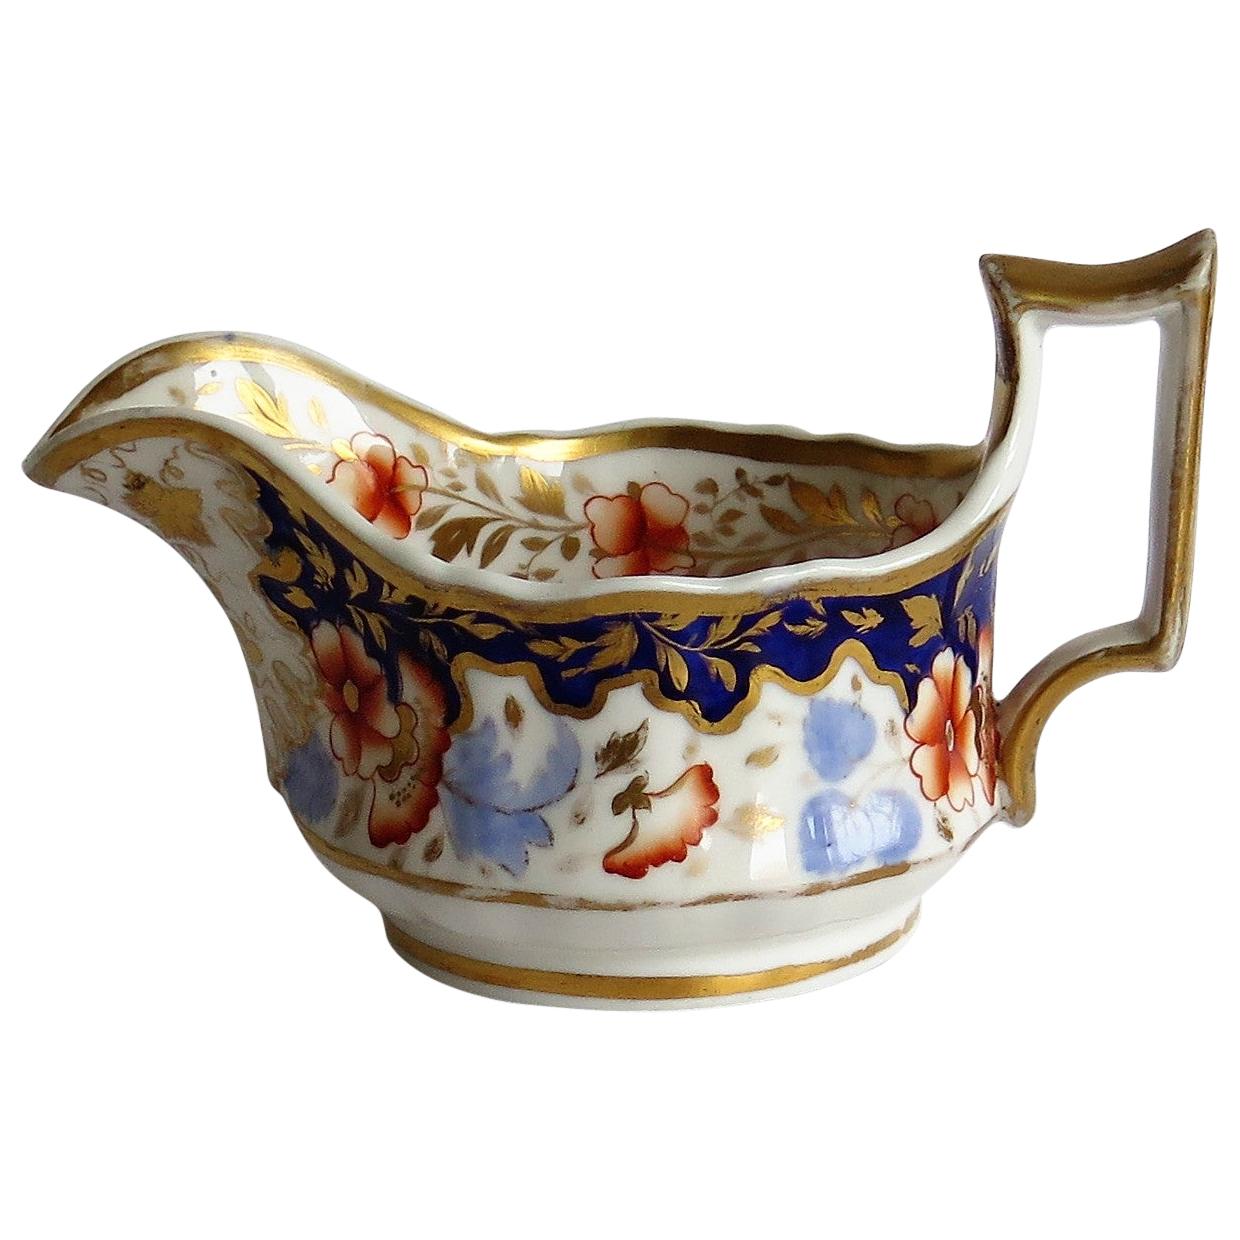 Ridgway-Porzellan Milchkrug oder Milchkännchen- oder Milchkännchenmuster 2/1005, Regency-Periode, um 1825